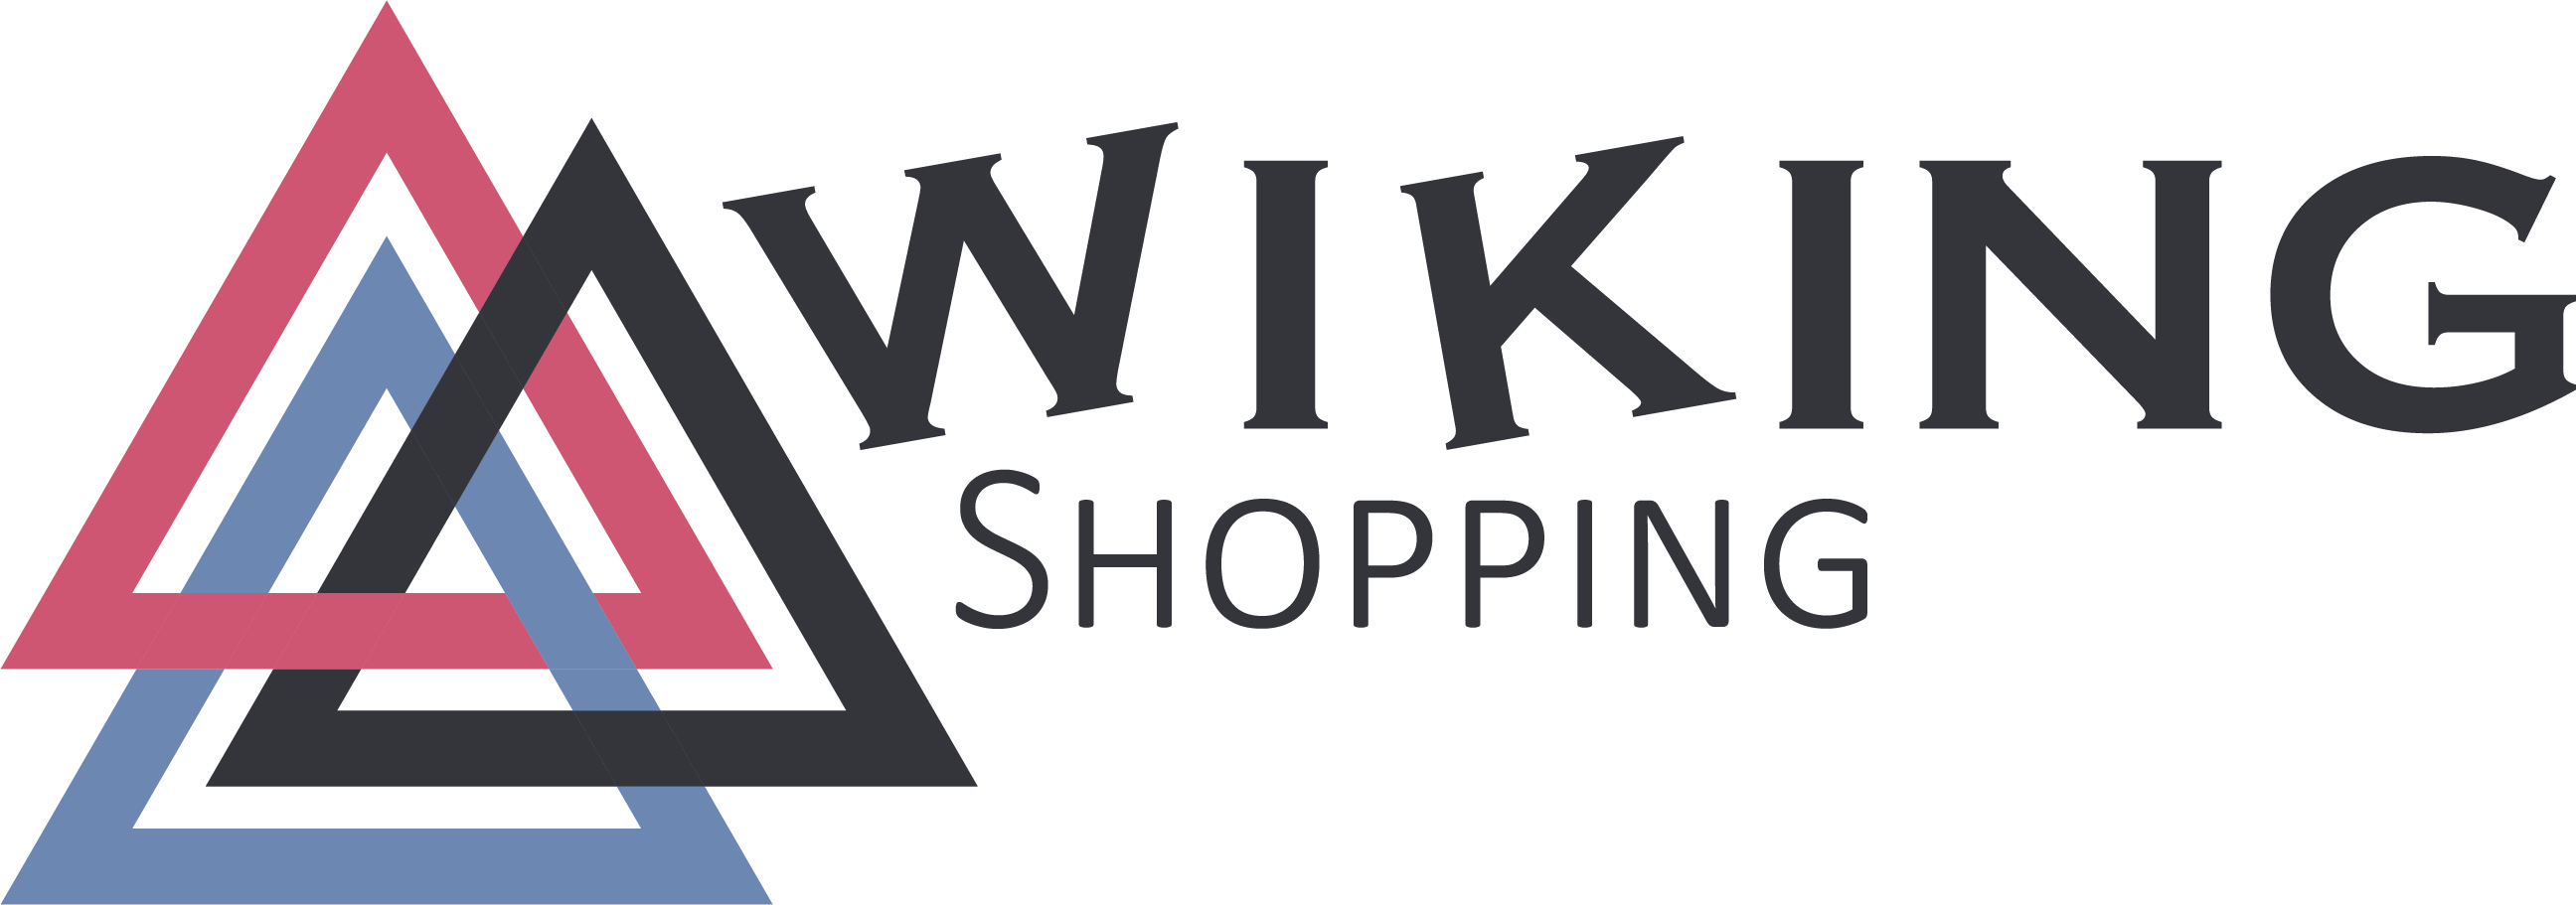 logo Wiking shopping